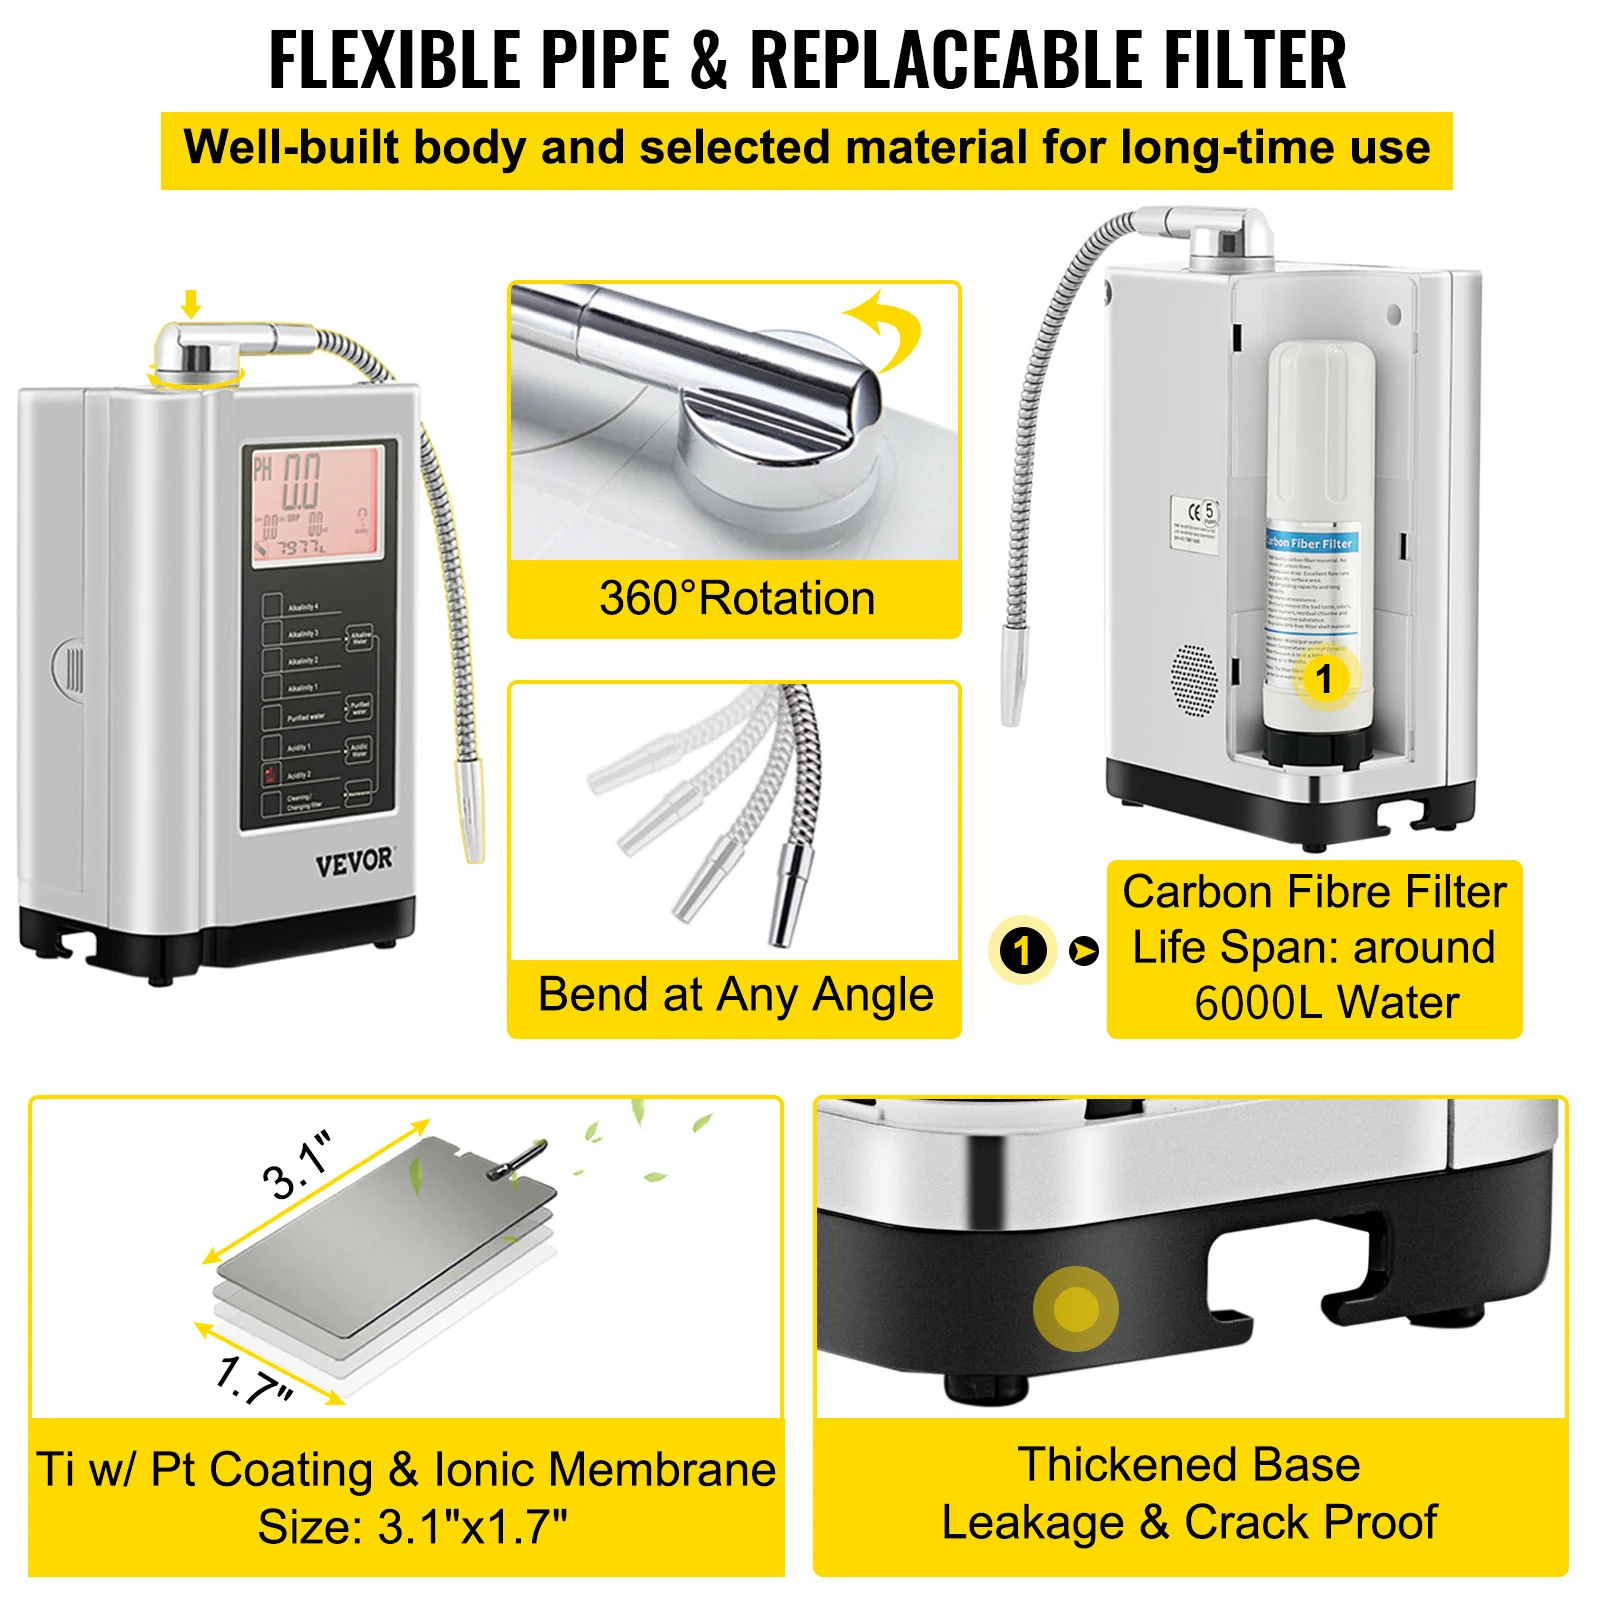 VEVOR-máquina ionizadora de agua PH3.5-10.5, sistema de filtración para el hogar, filtro purificador de bebidas, 7 ajustes de agua para electrodomésticos